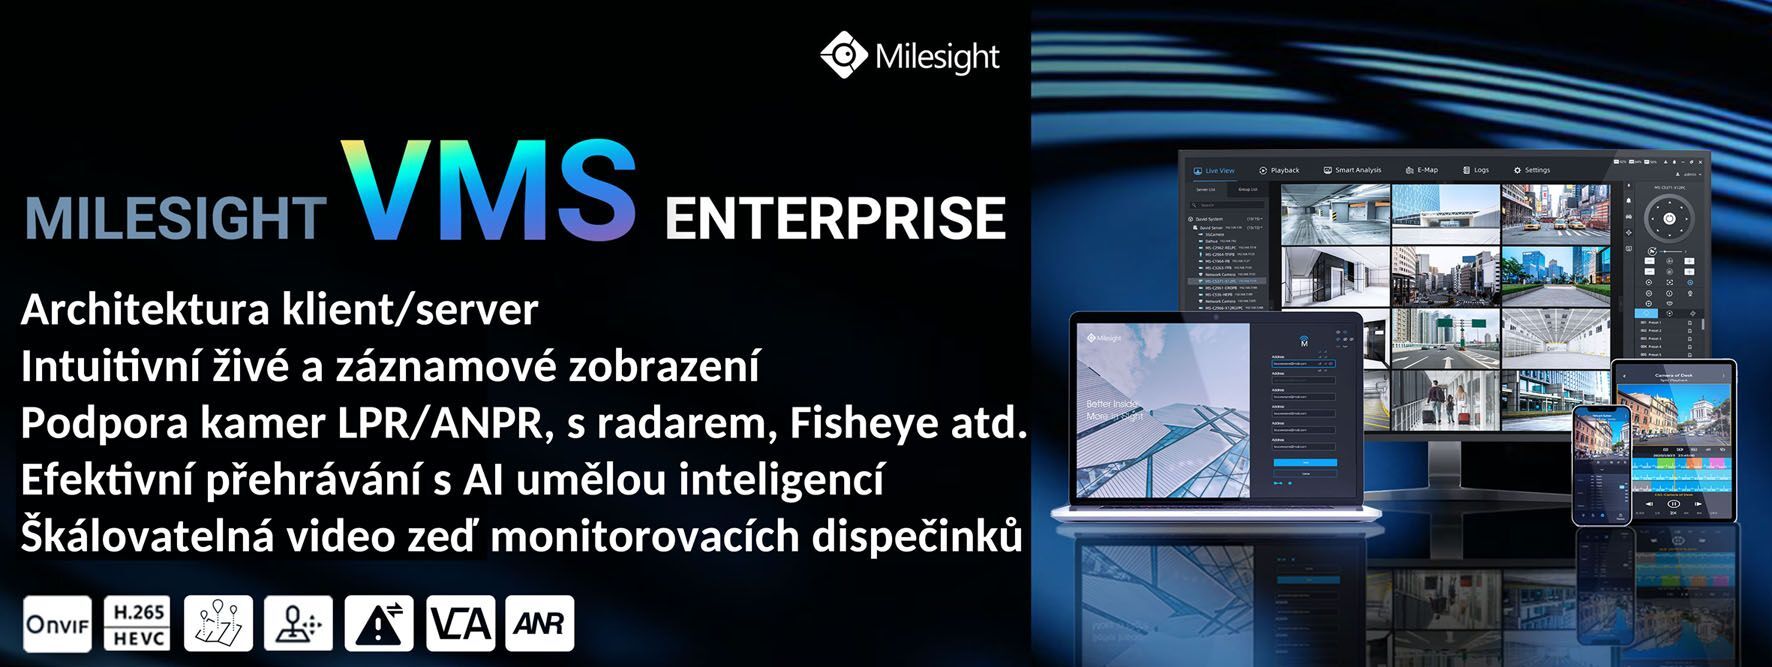 MS-MC-001 14CH Software VMS Enterprise